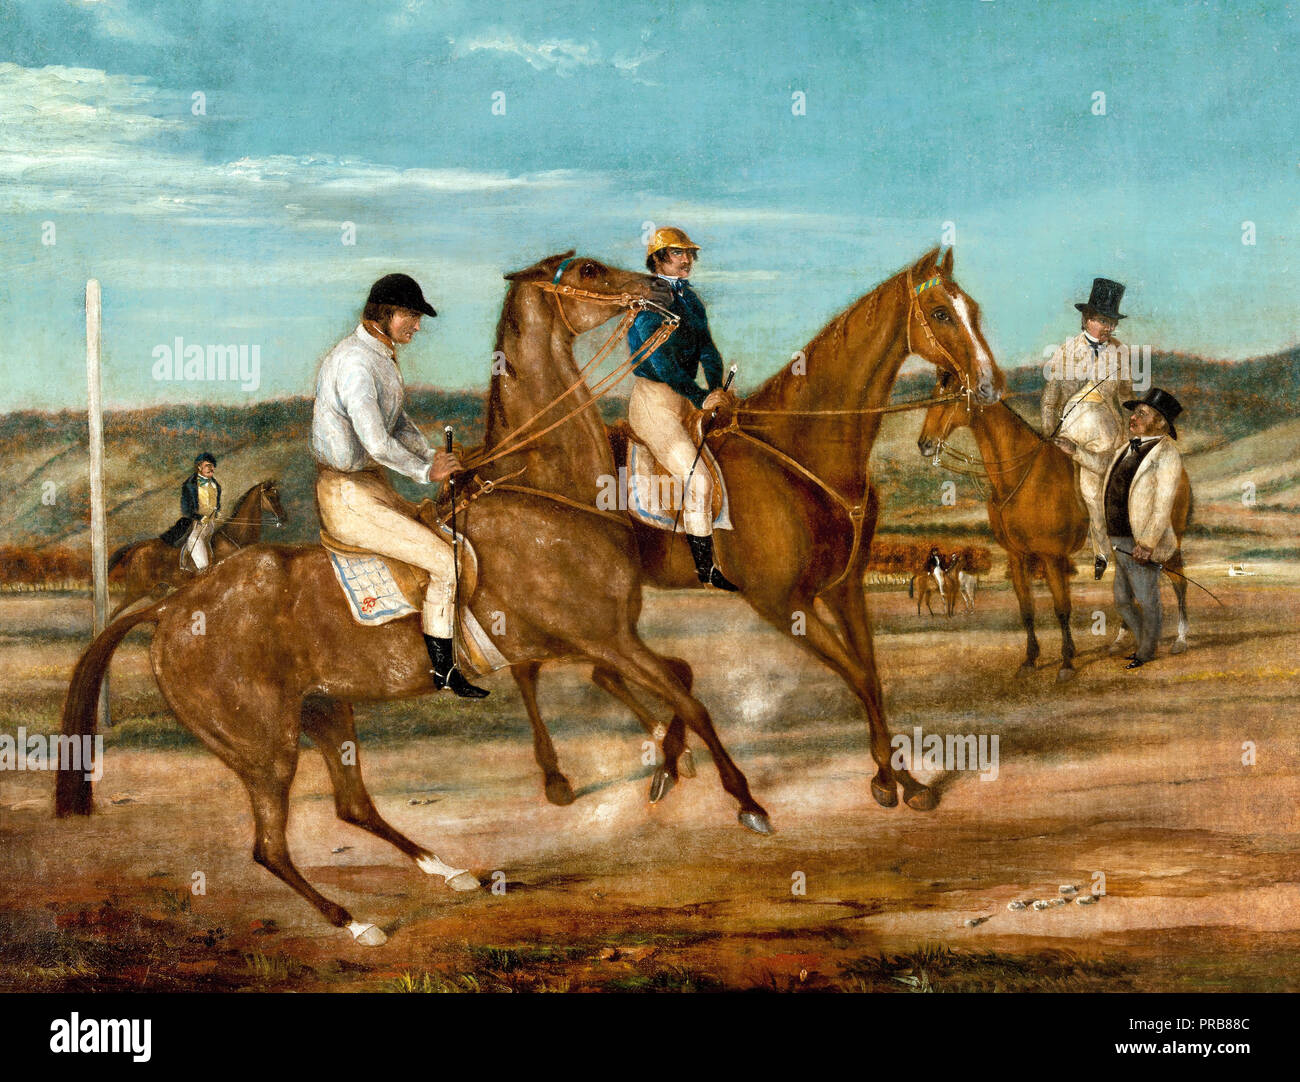 John M. Skipper, en el arranque de las manos. Circa 1850 Óleo sobre lienzo, Galería de Arte de Australia del Sur. Foto de stock